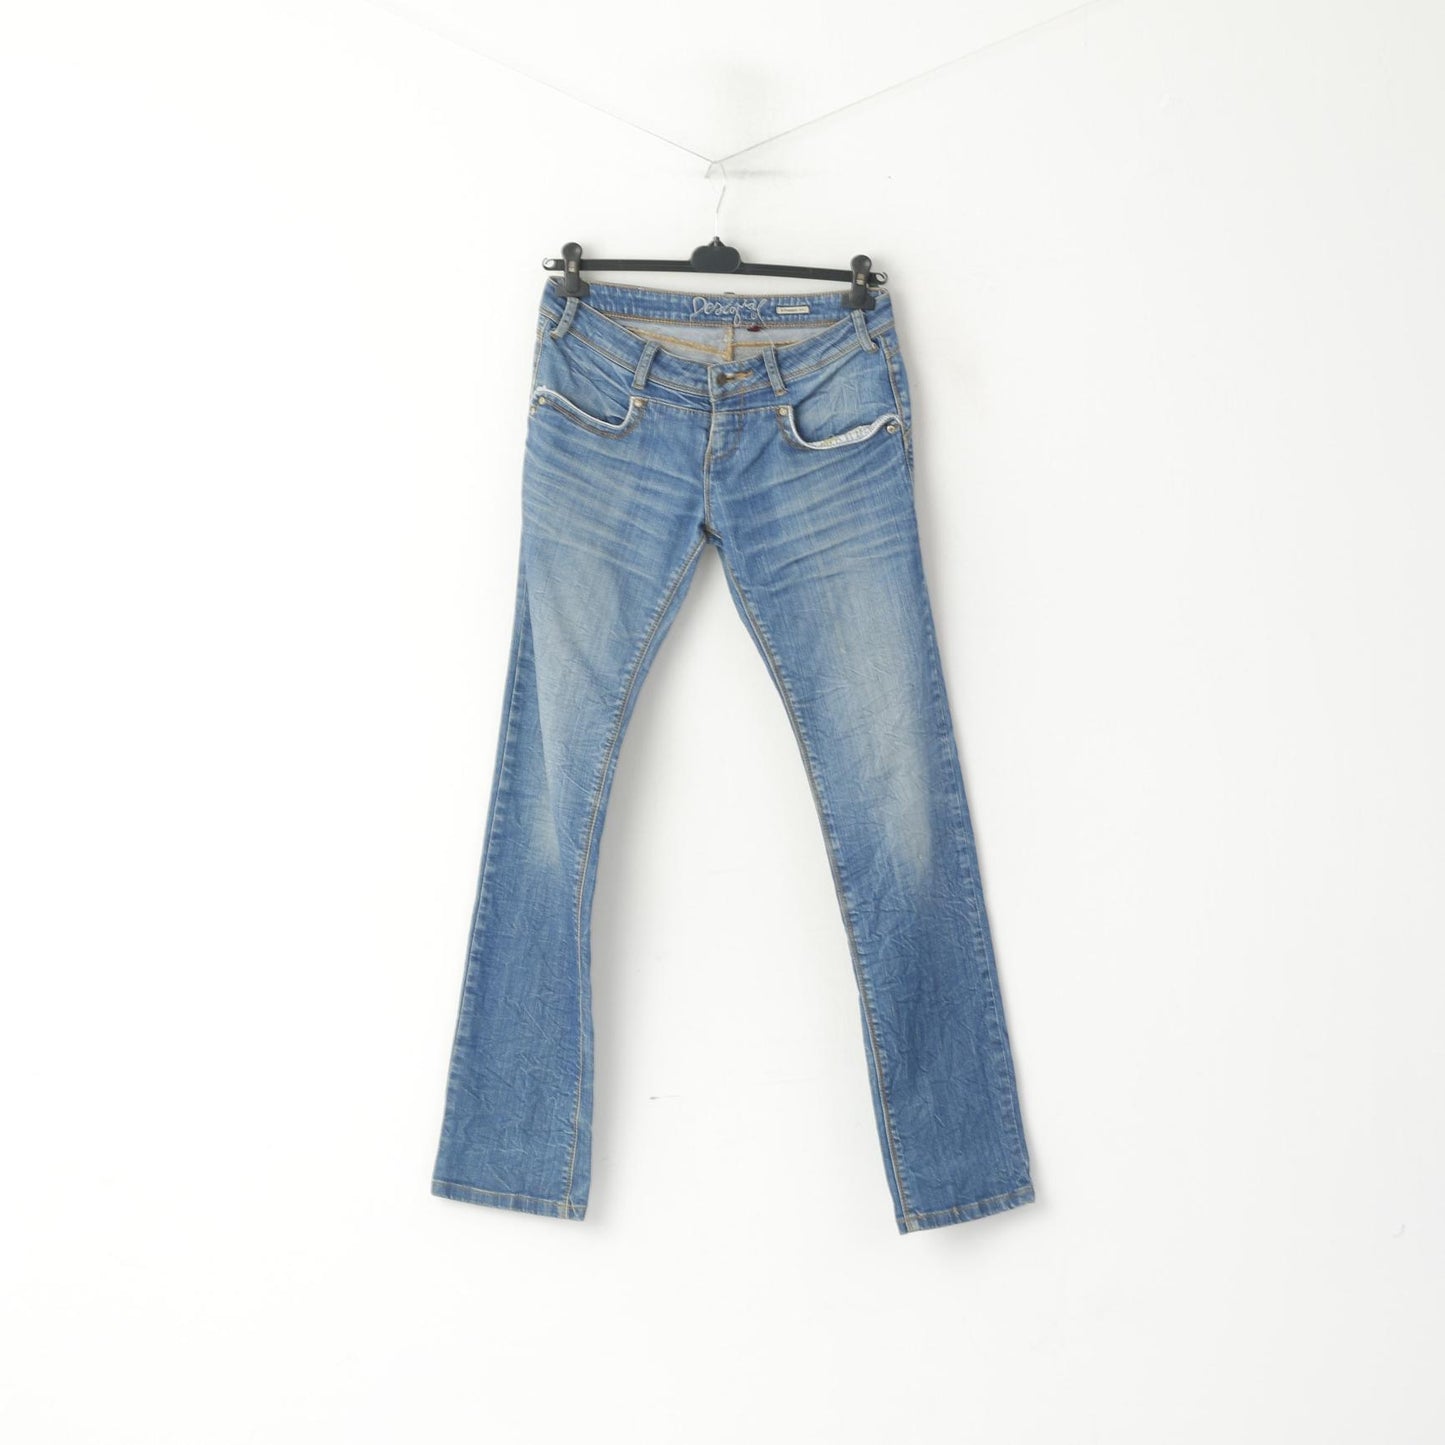 Desigual Women 40 Jeans Trousers Blue Cotton Denim Straight Fit Pants